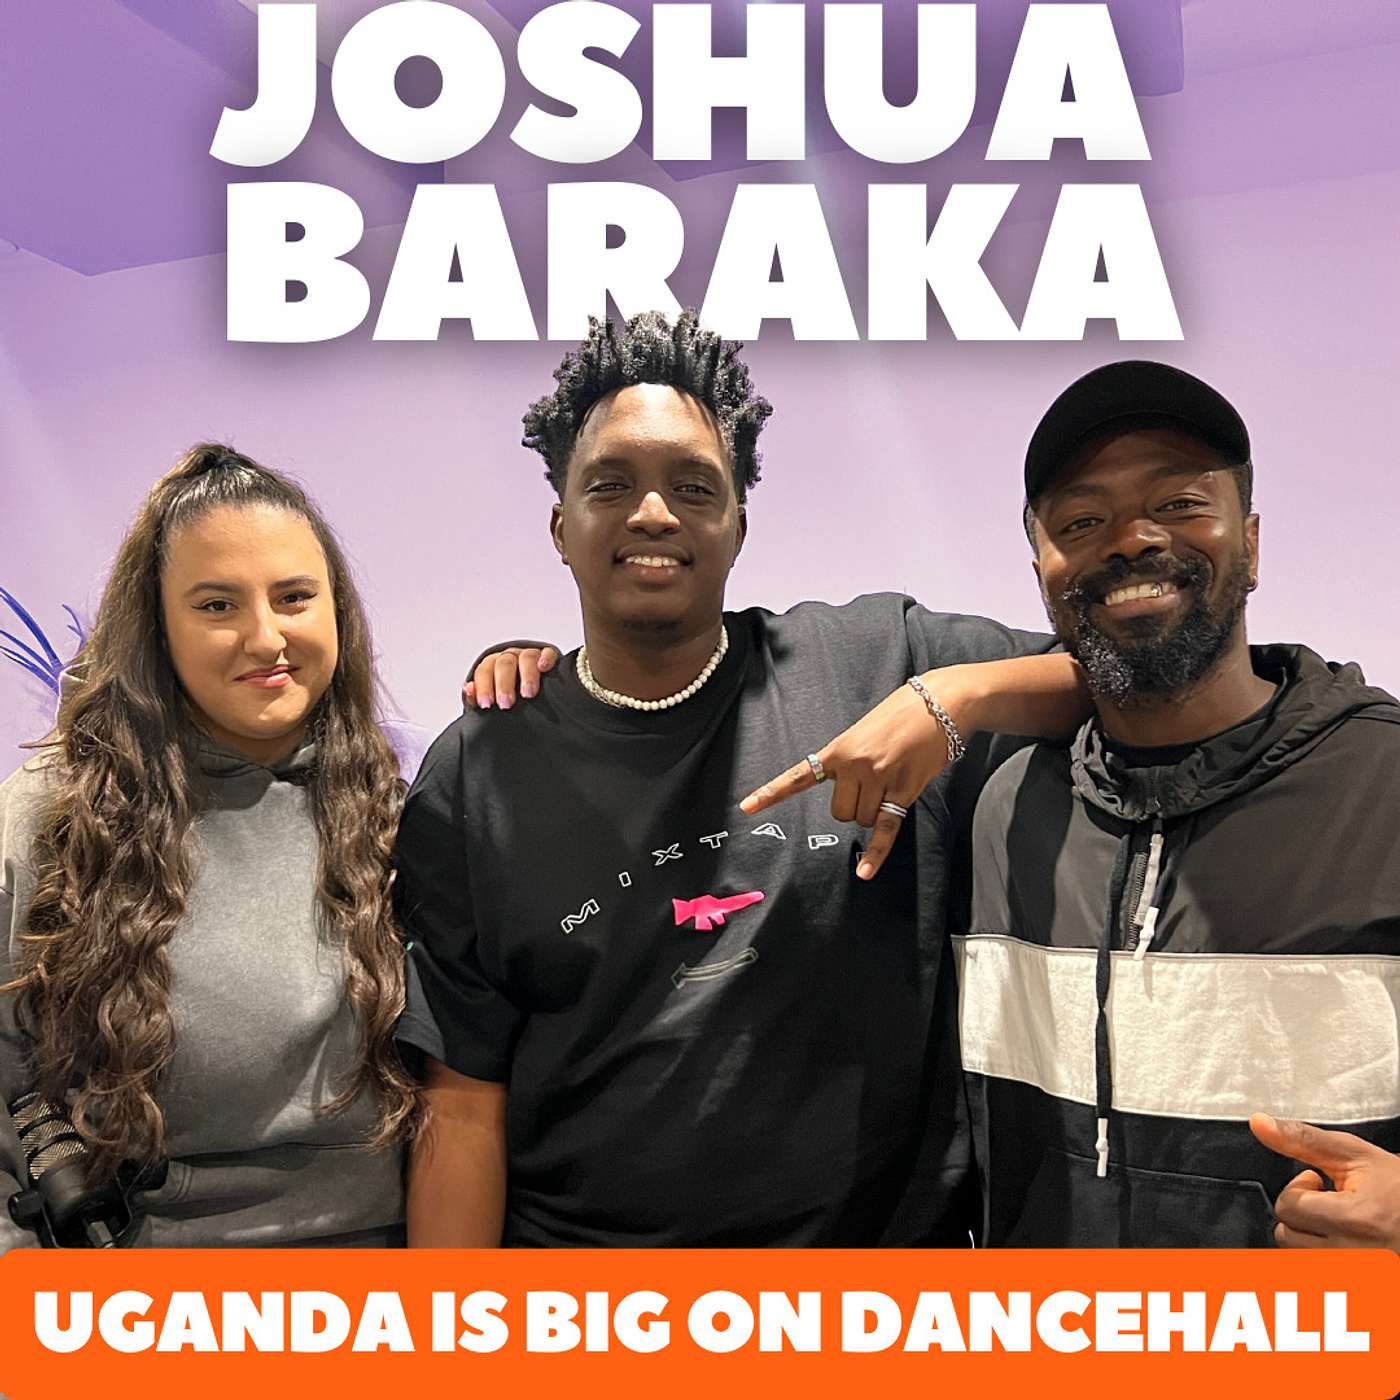 Joshua Baraka: "Uganda Is Big On Dancehall"